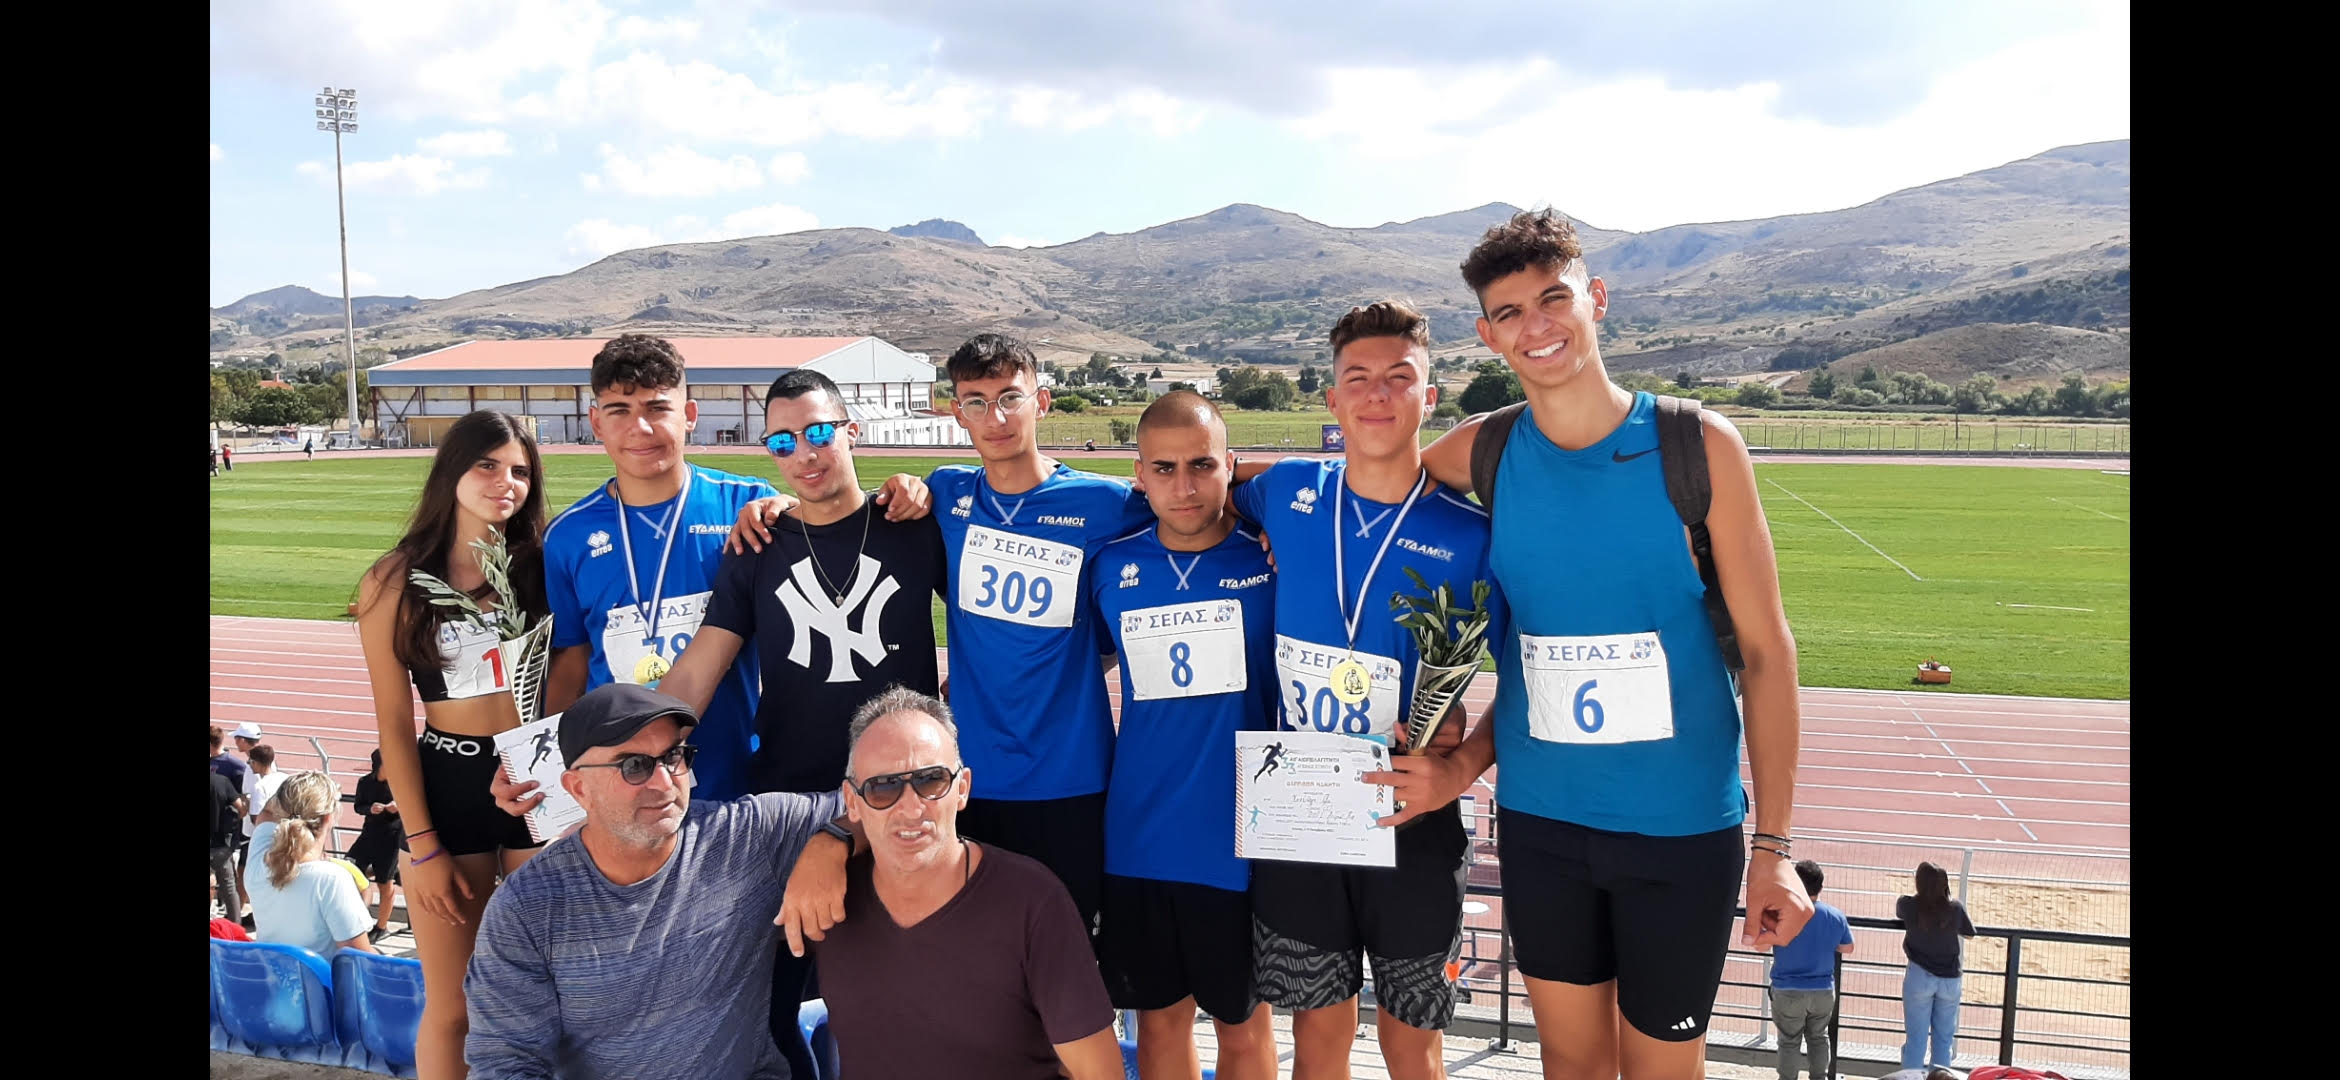 Αιγαιοπελαγίτικοι Αγώνες Στίβου “Λήμνος 2022”: Πρωταθλητής Αιγαίου ο Α.Σ. Έφηβος Χίου